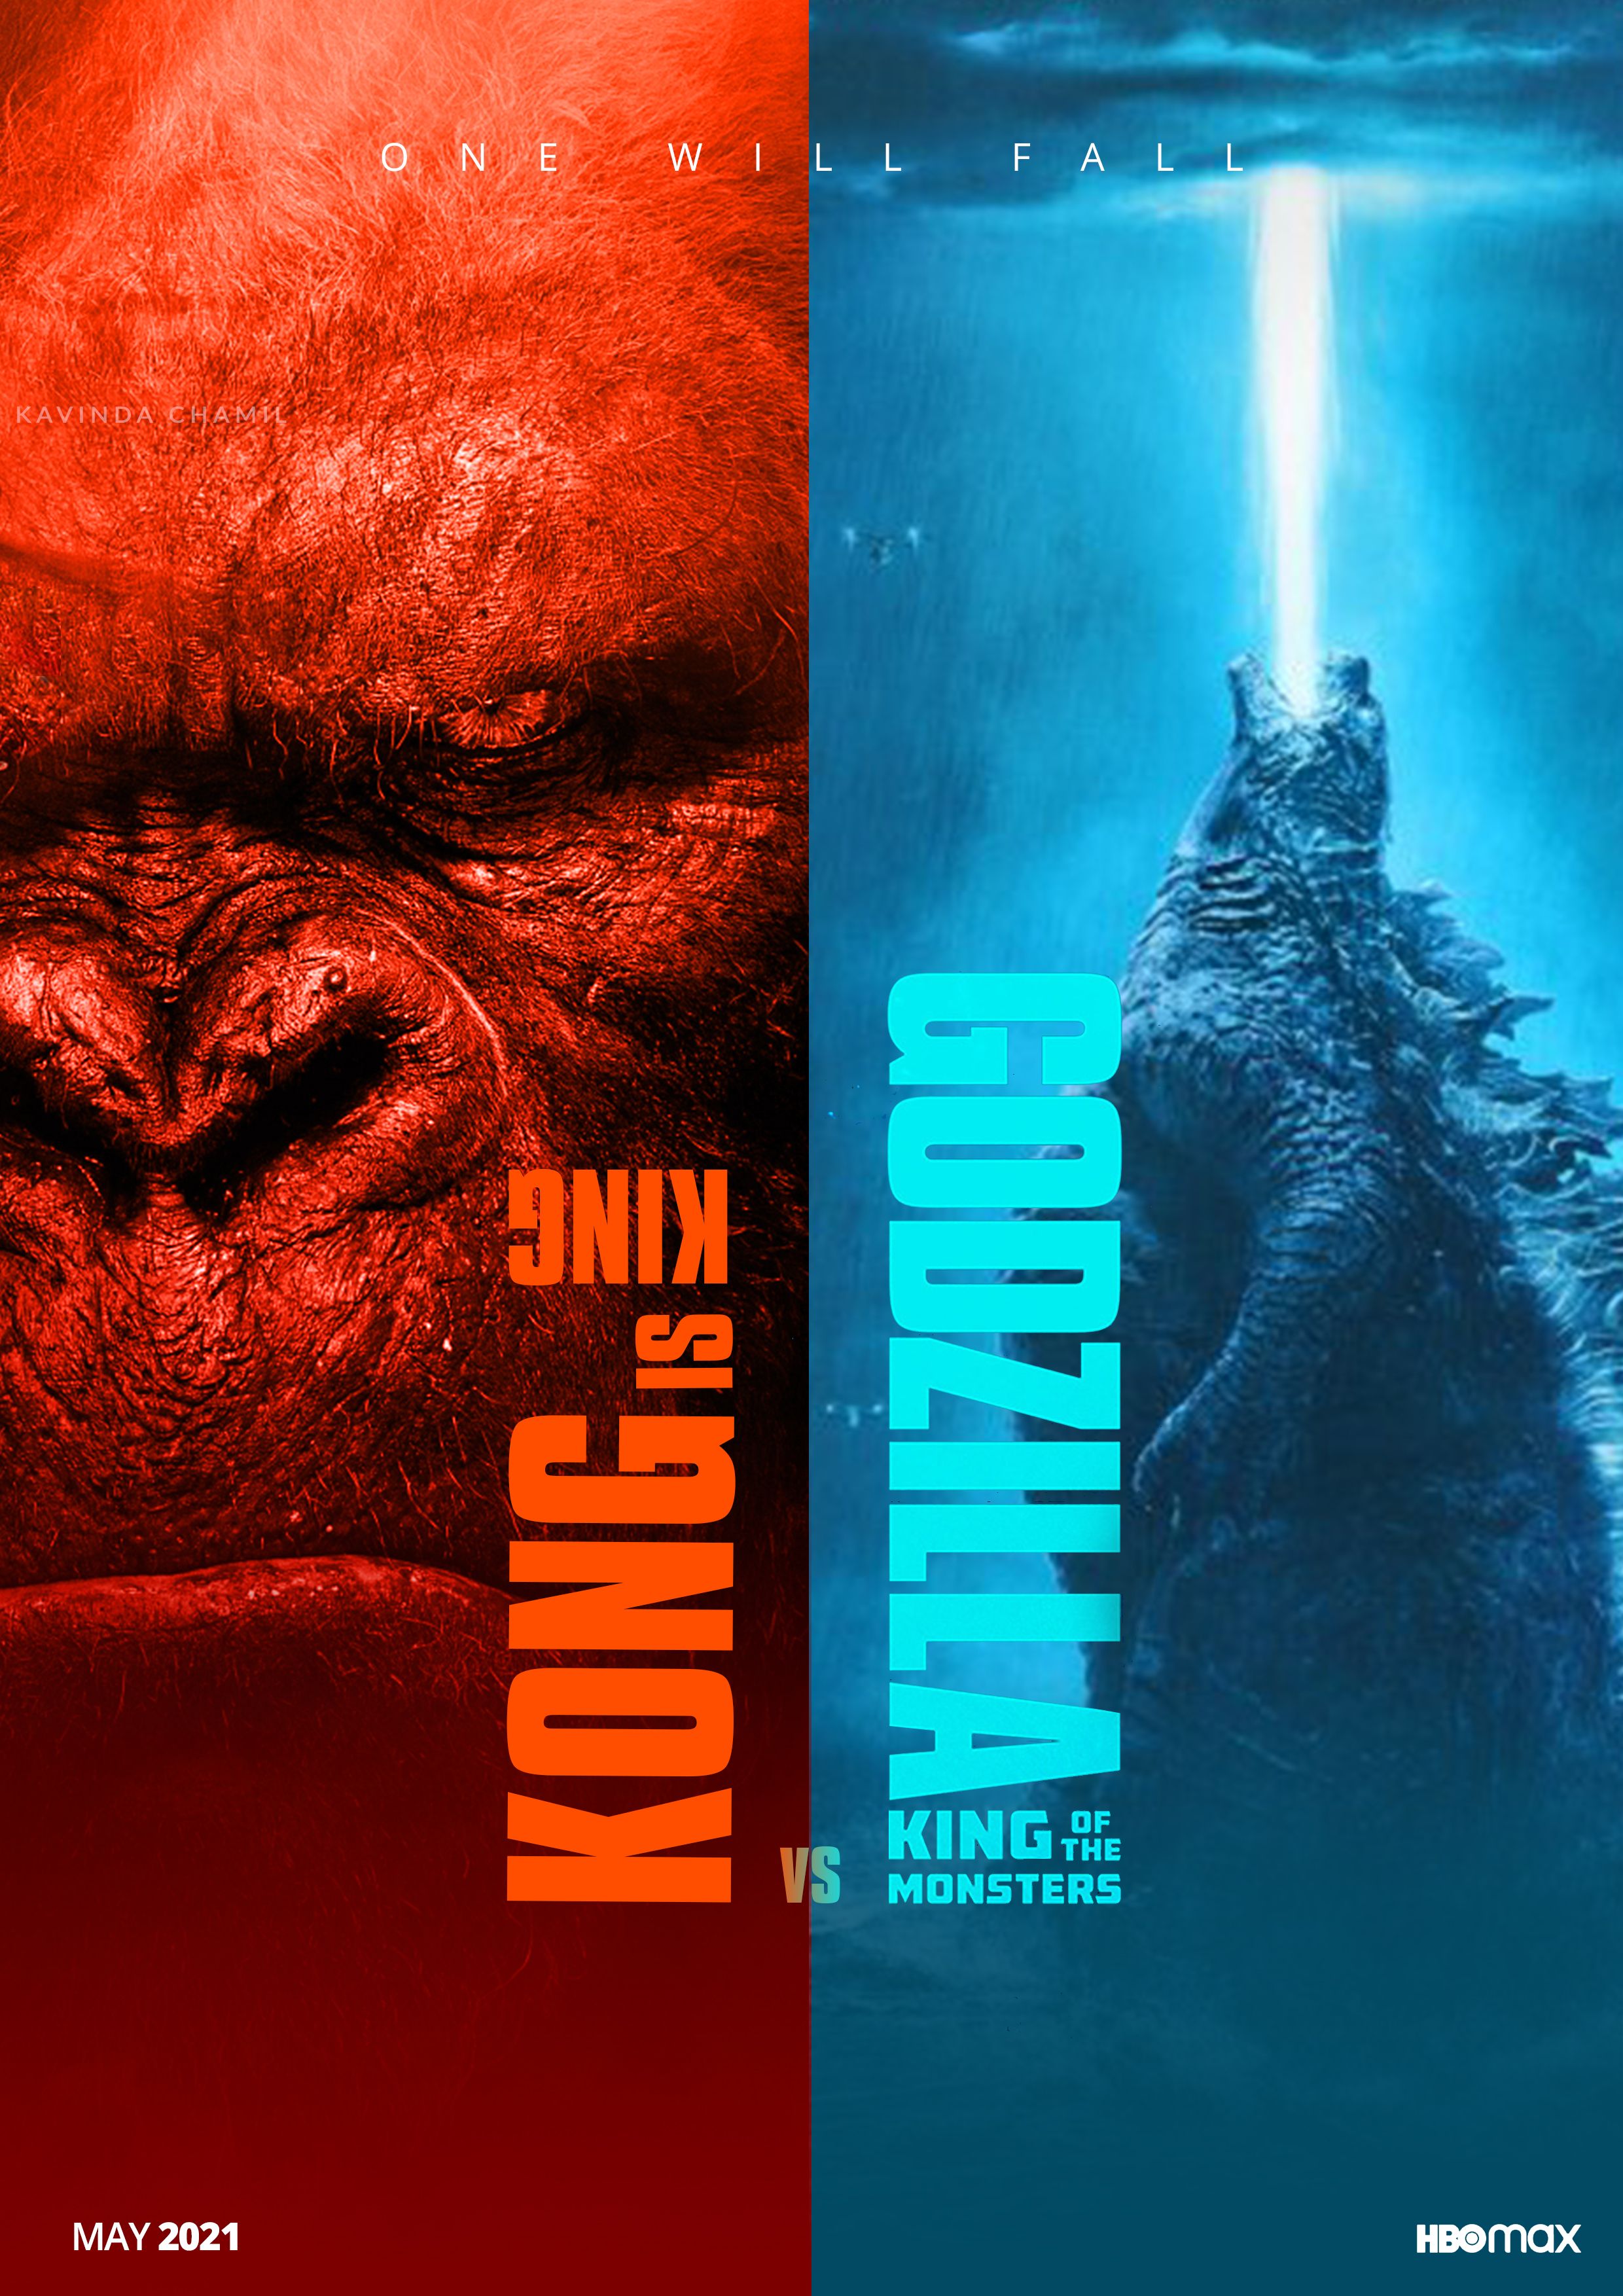 Poster Of Godzilla Vs Kong 201 Wallpapers